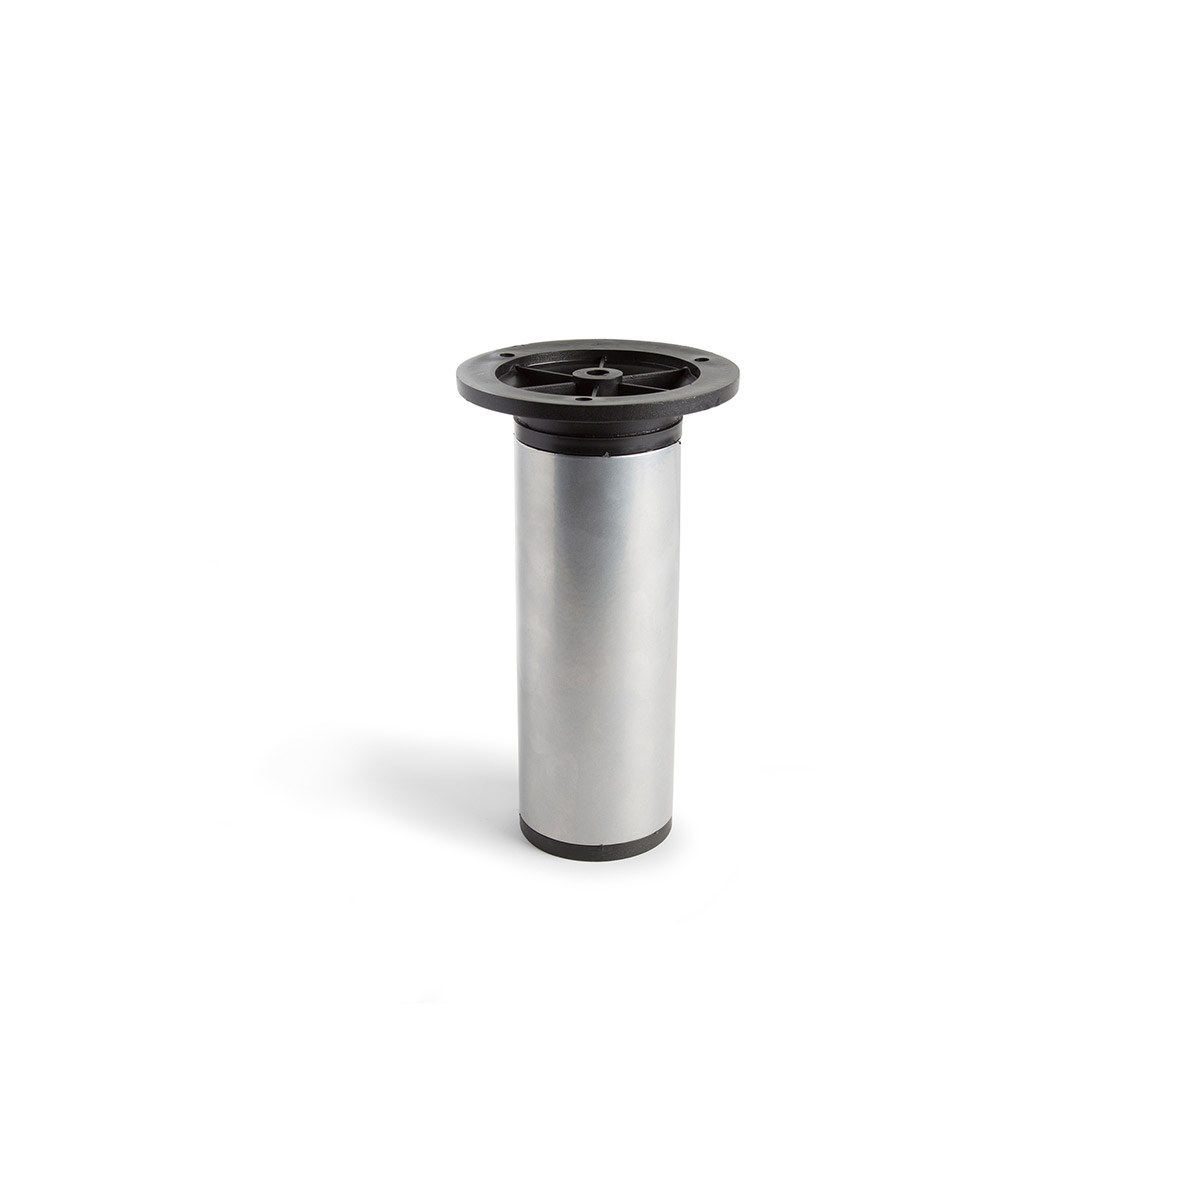 Pied cylindrique réglable en acier d'une hauteur de 150 mm et finition aluminium. Dimensions: 50x50x150 mm